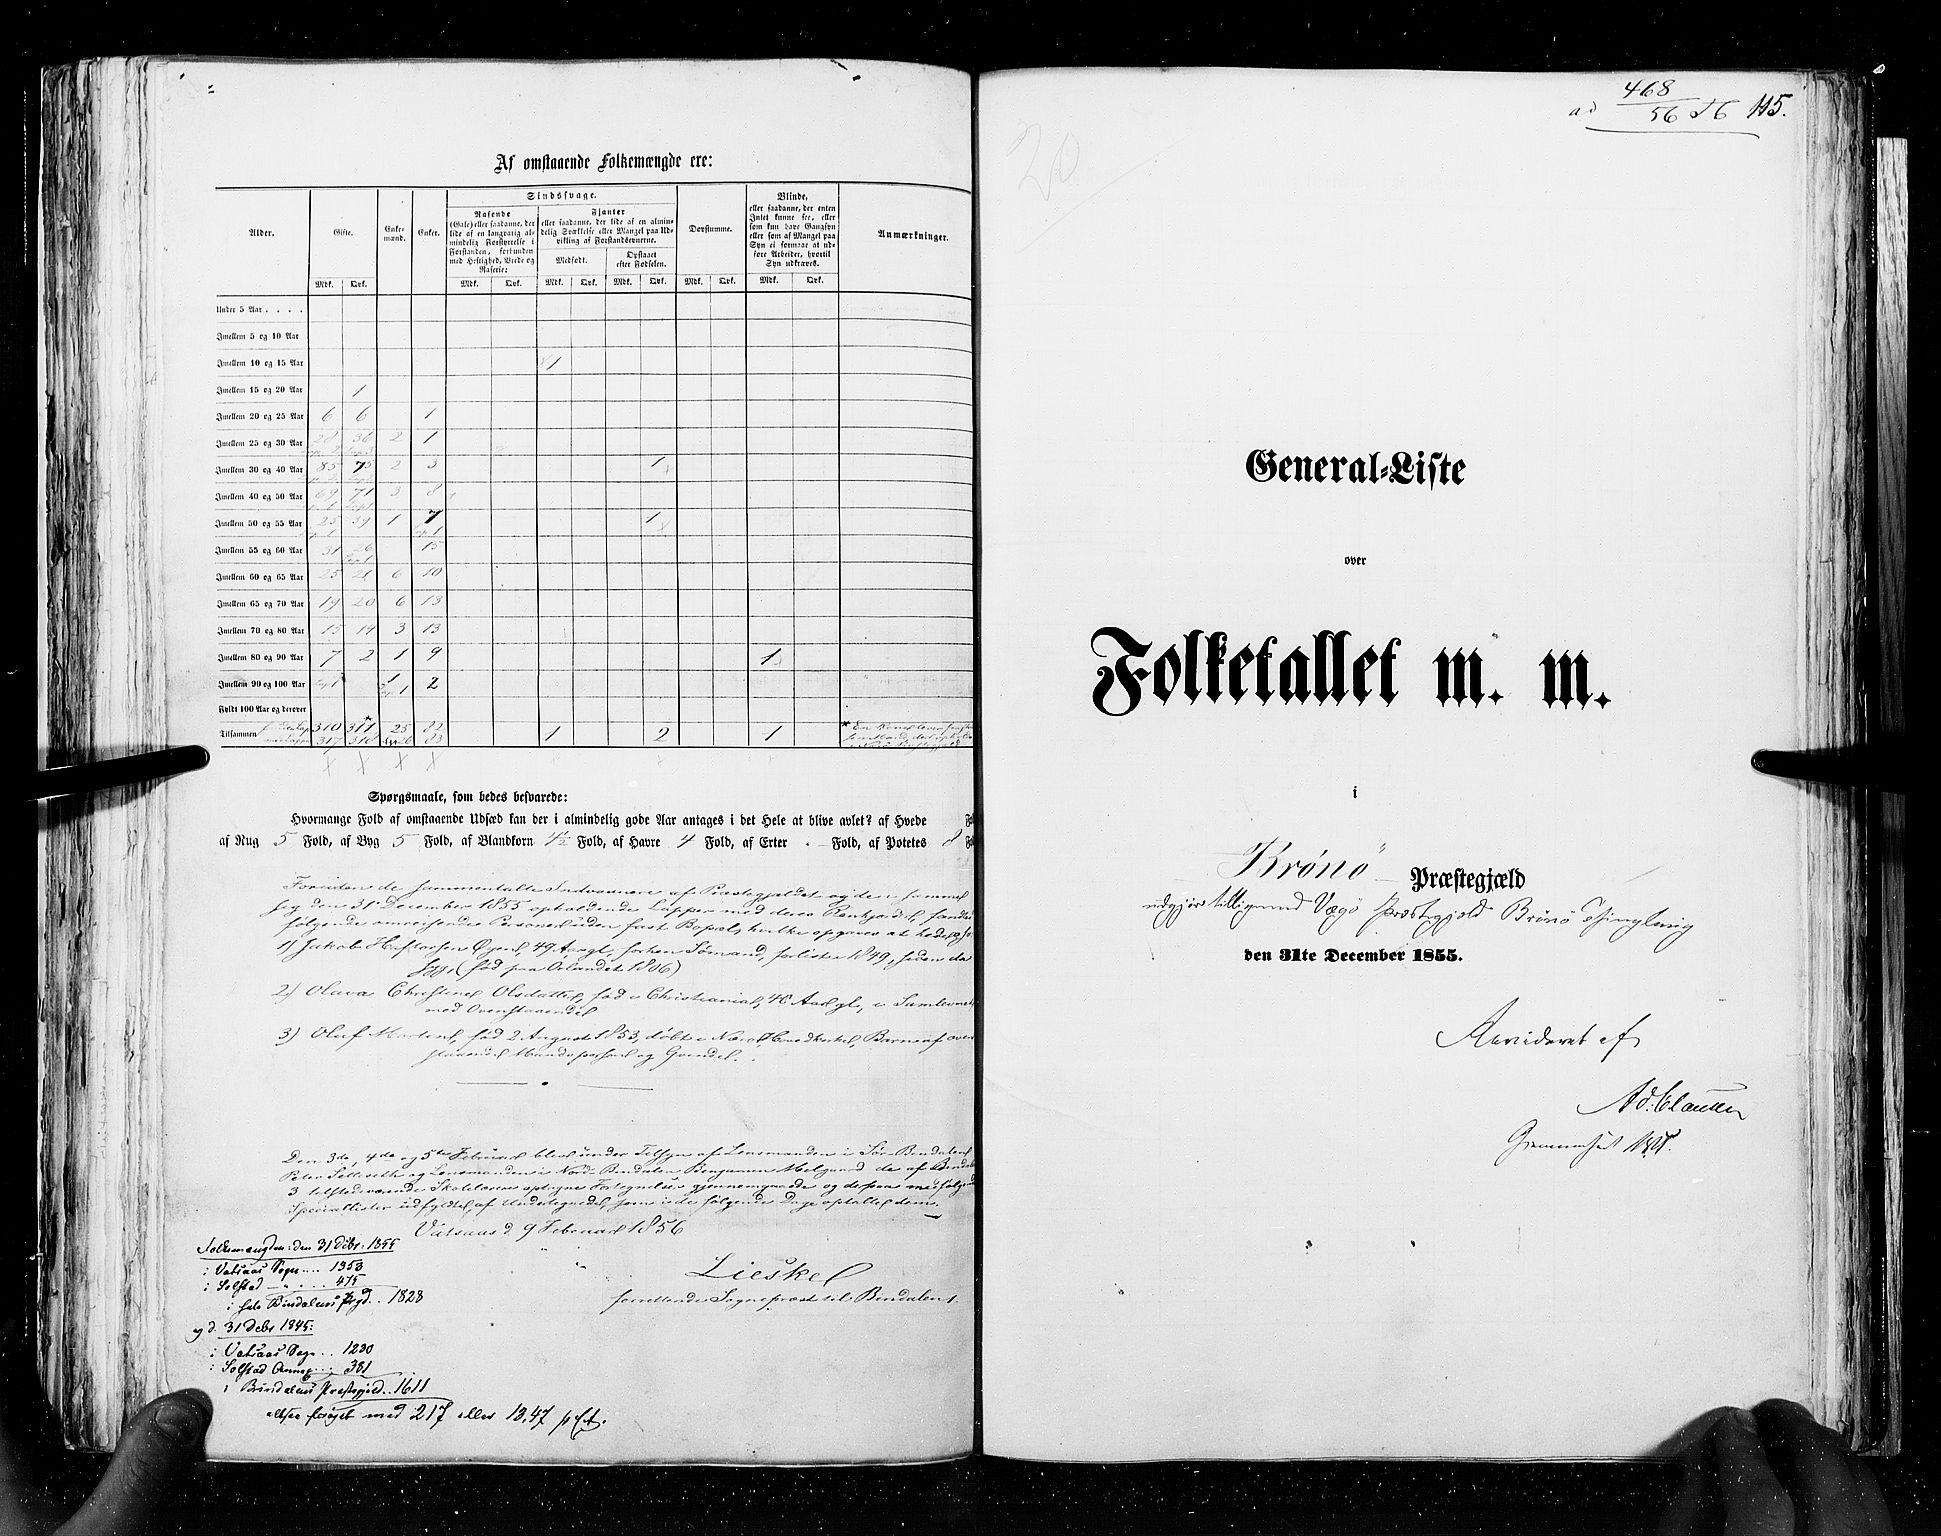 RA, Census 1855, vol. 6A: Nordre Trondhjem amt og Nordland amt, 1855, p. 115